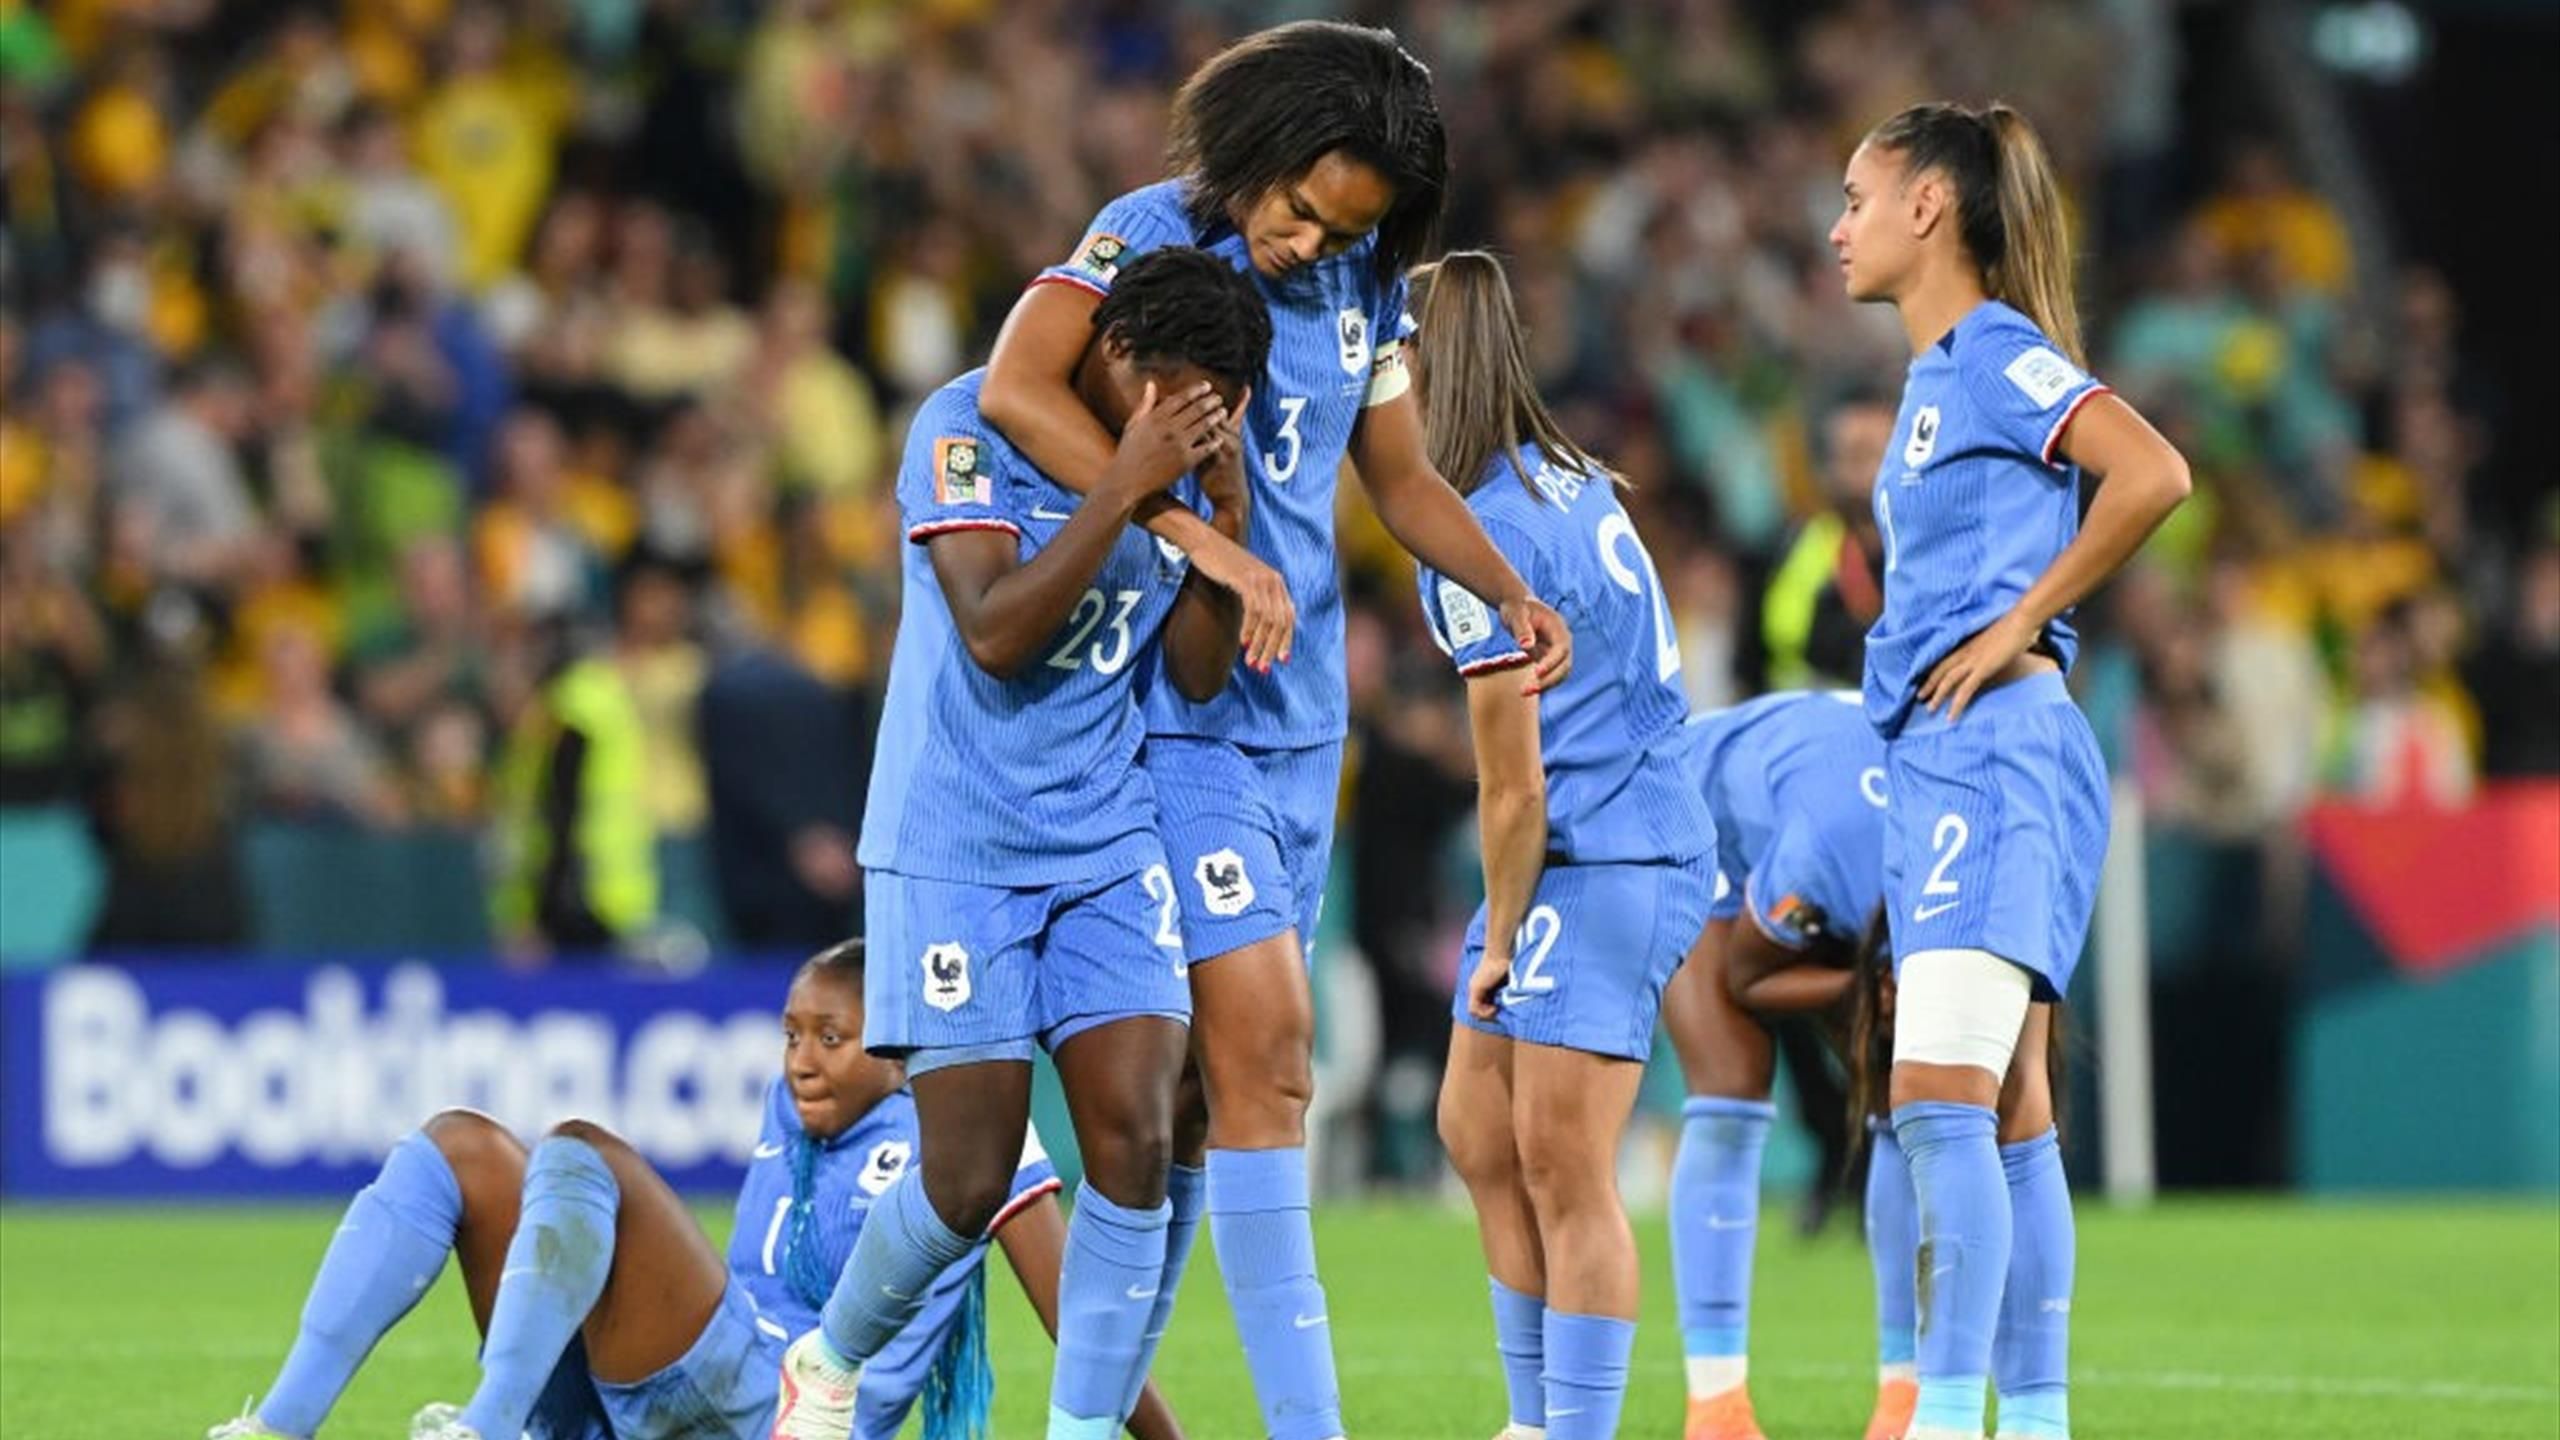 Mondiali femminili – La Francia è stata eliminata ai quarti dall’Australia (0-0, 7-6 ai rigori)